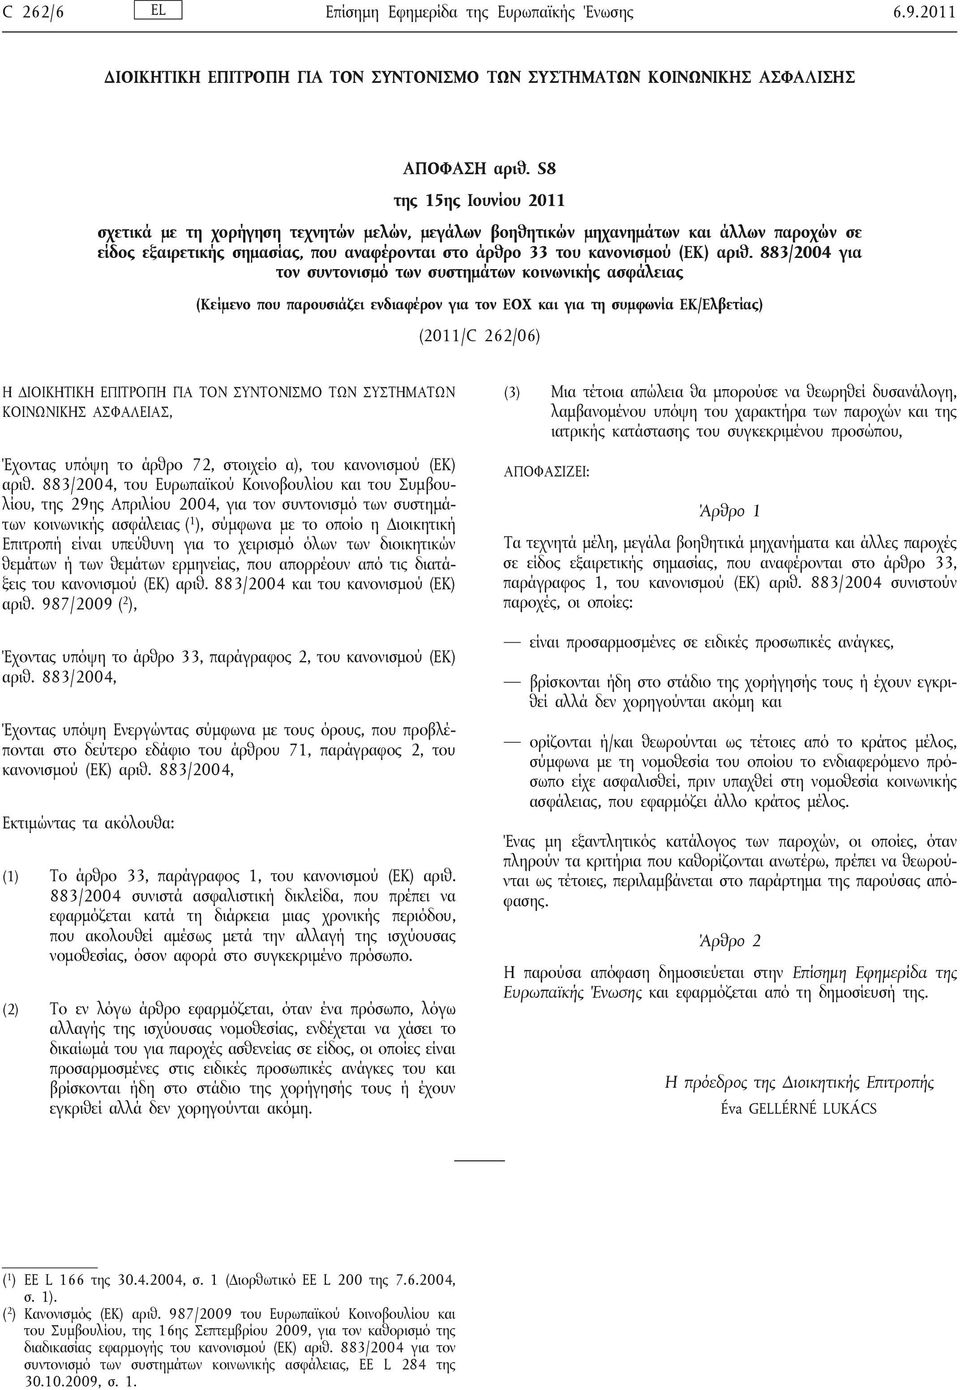 883/2004 για τον συντονισμό των συστημάτων κοινωνικής ασφάλειας (Κείμενο που παρουσιάζει ενδιαφέρον για τον ΕΟΧ και για τη συμφωνία ΕΚ/Ελβετίας) (2011/C 262/06) Η ΔΙΟΙΚΗΤΙΚΗ ΕΠΙΤΡΟΠΗ ΓΙΑ ΤΟΝ